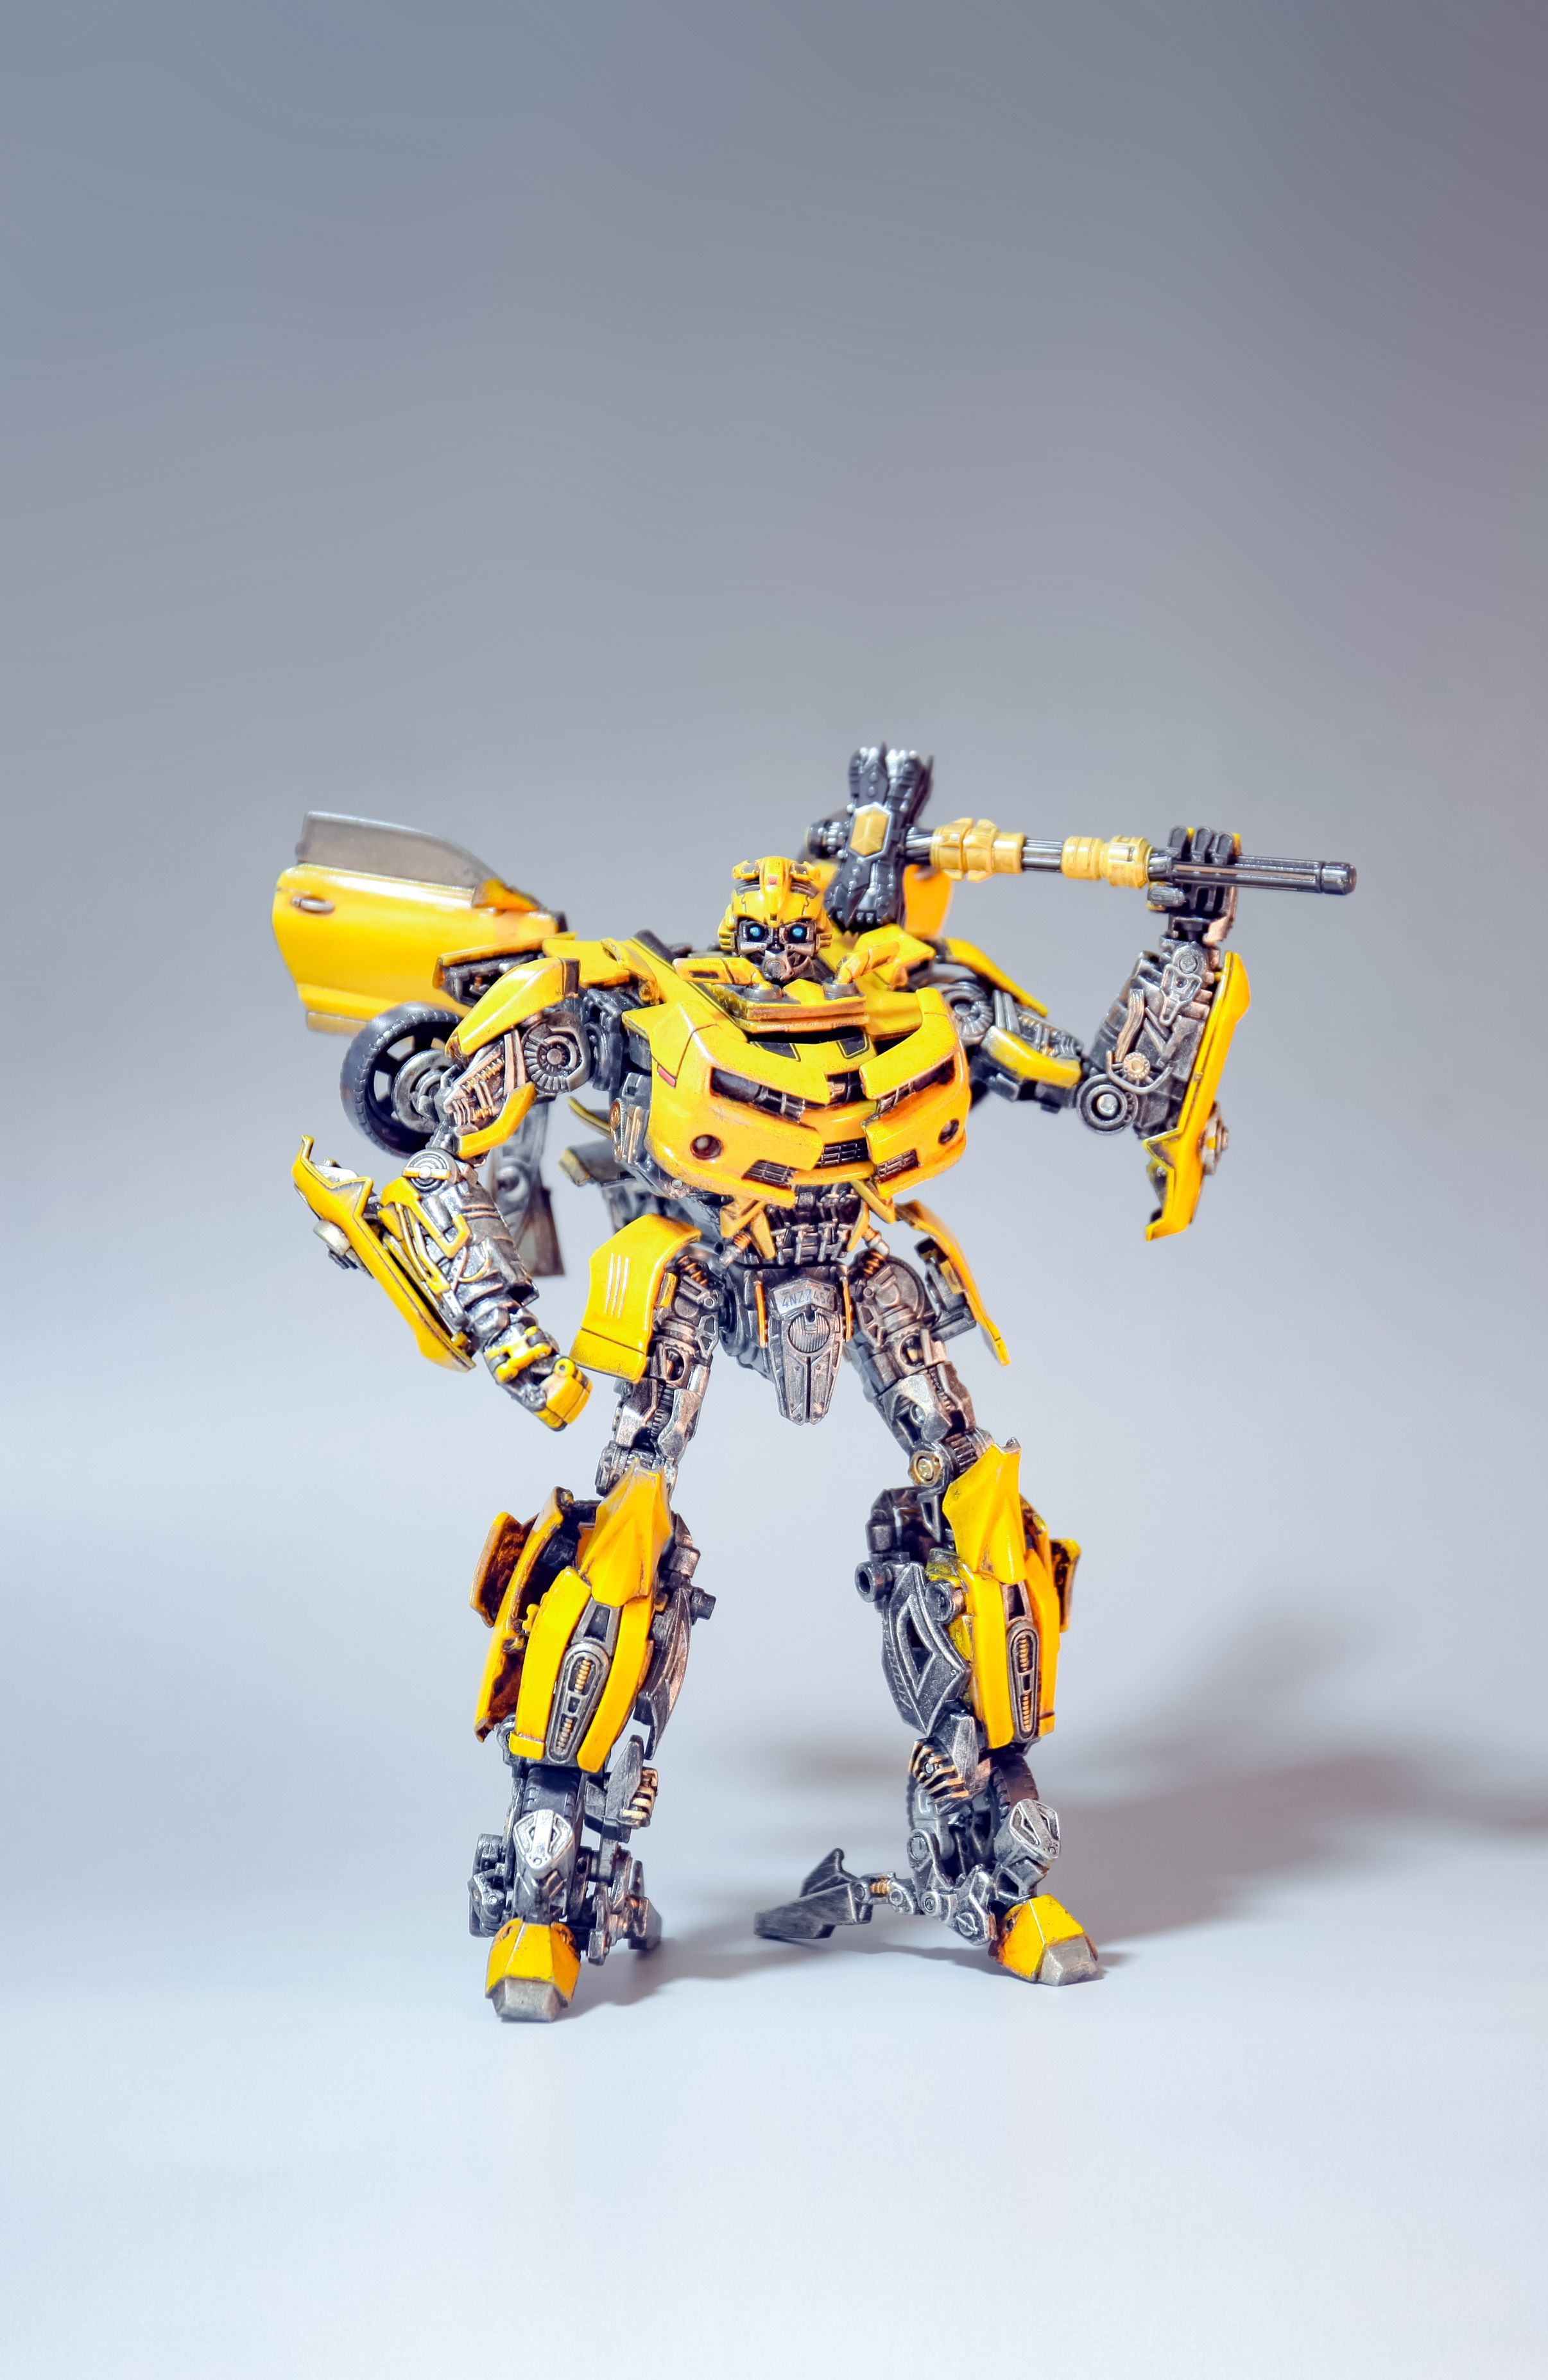 厂家出售3米大黄蜂变形金刚机器人模型 大型变形金刚金属模型-阿里巴巴